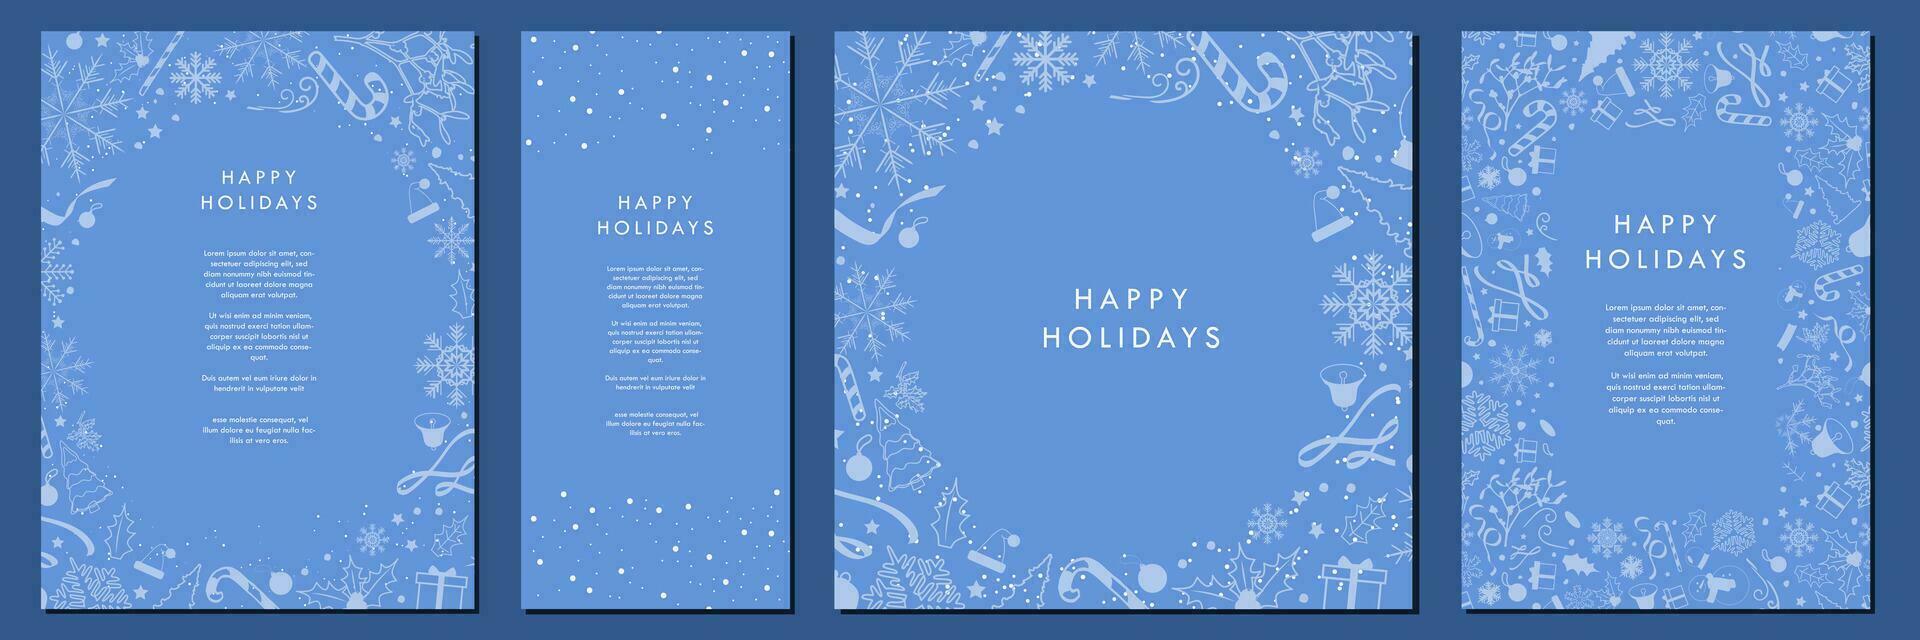 verde azulado azul Navidad modelo diseños hermosa monocromo Navidad antecedentes con azul suave Navidad elemento patrones. póster, vertical bandera, tarjeta, a4 carta. editable vector ilustración.